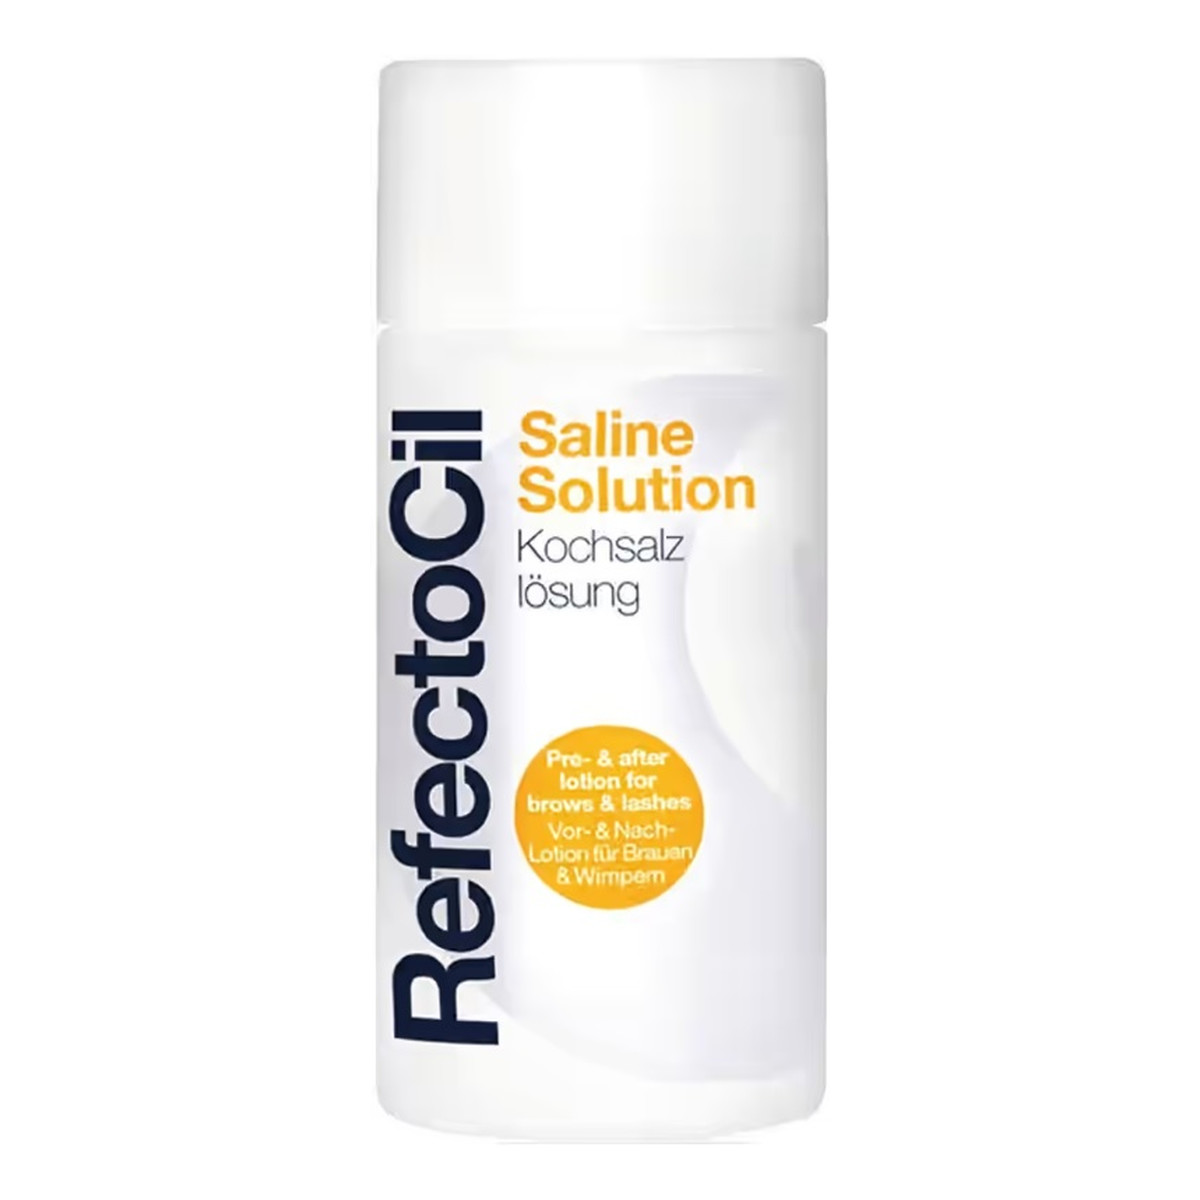 RefectoCil Saline solution demakijaż oczu dla kobiet 150ml